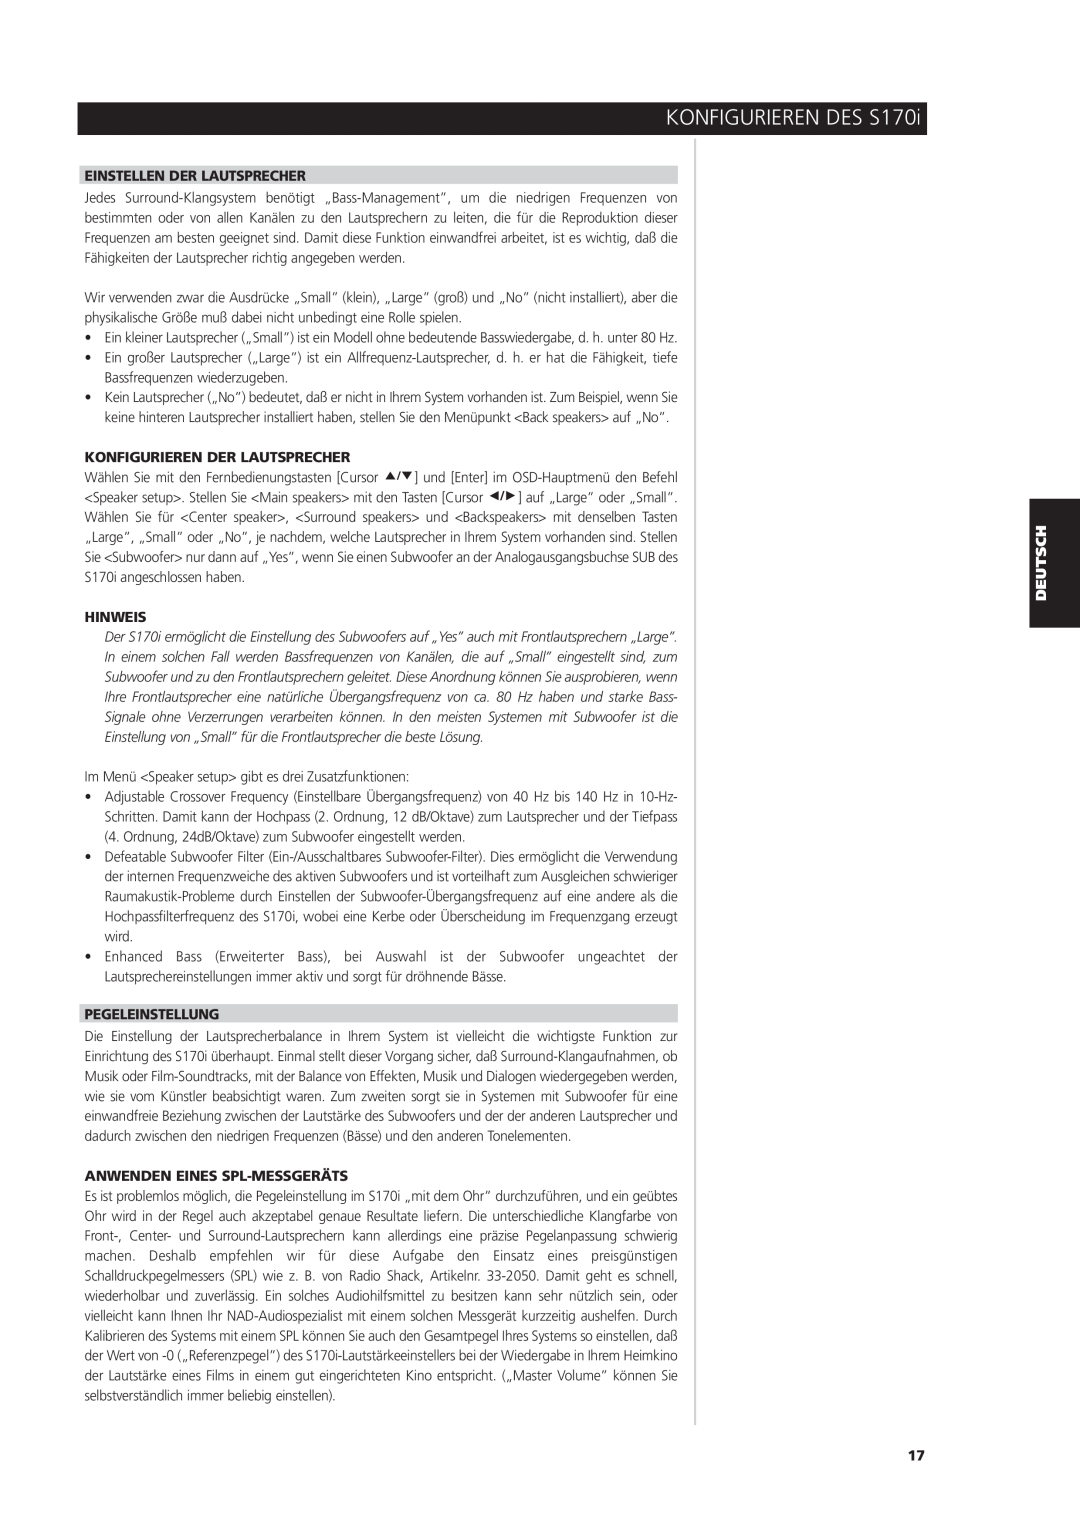 NAD S170iAV owner manual Einstellen Der Lautsprecher, Konfigurieren Der Lautsprecher, Hinweis, Pegeleinstellung 